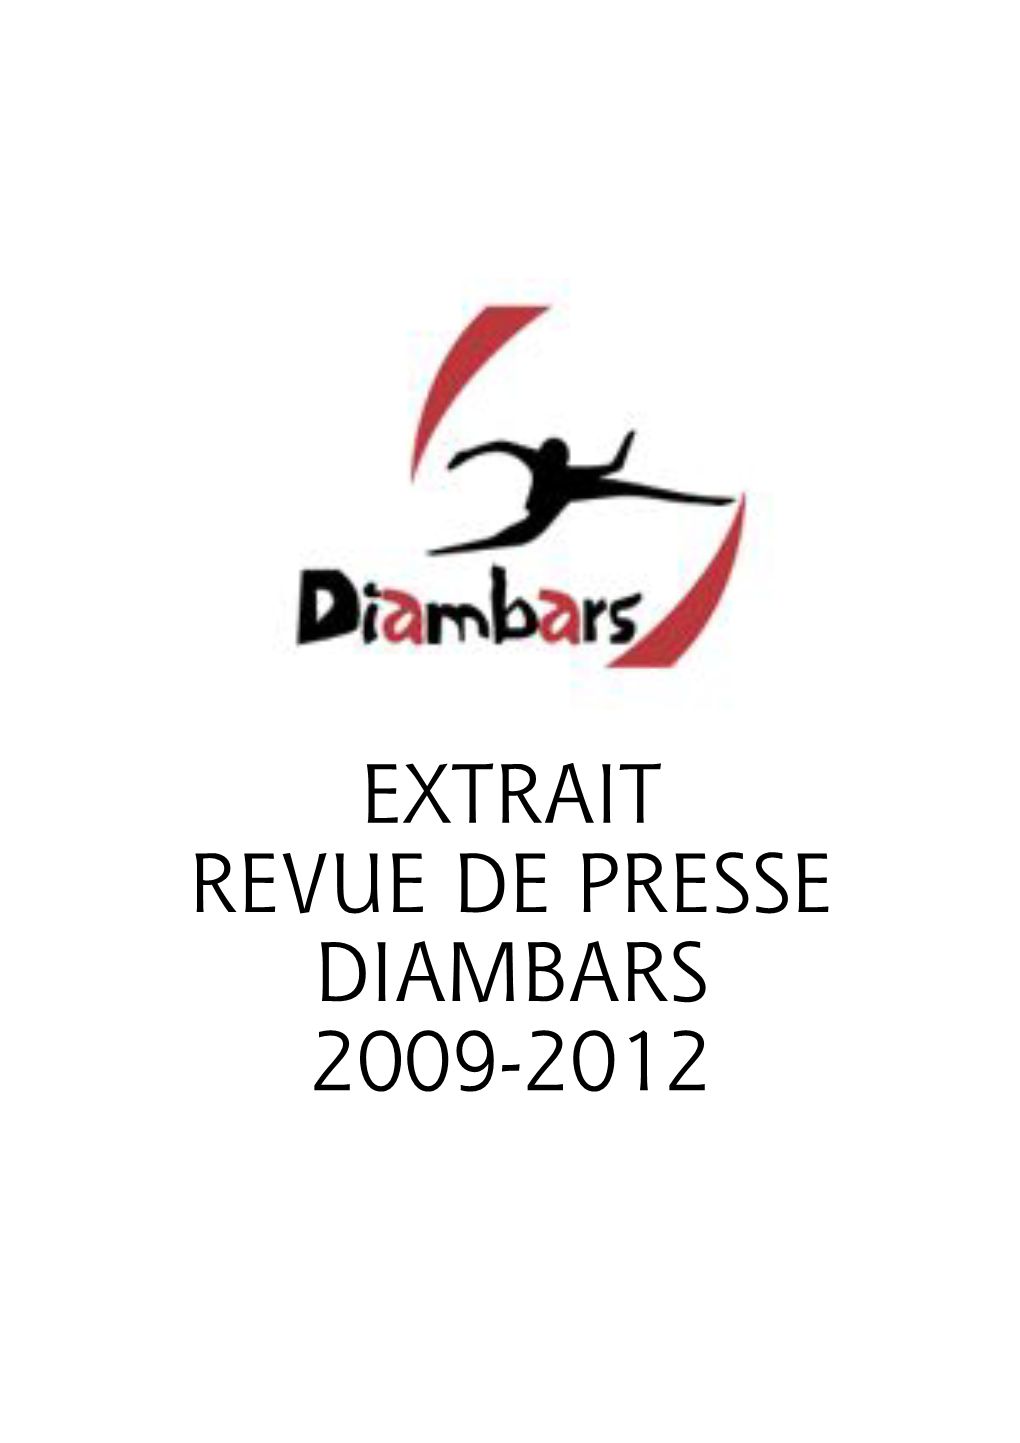 Extrait Revue De Presse Diambars 2009-2012